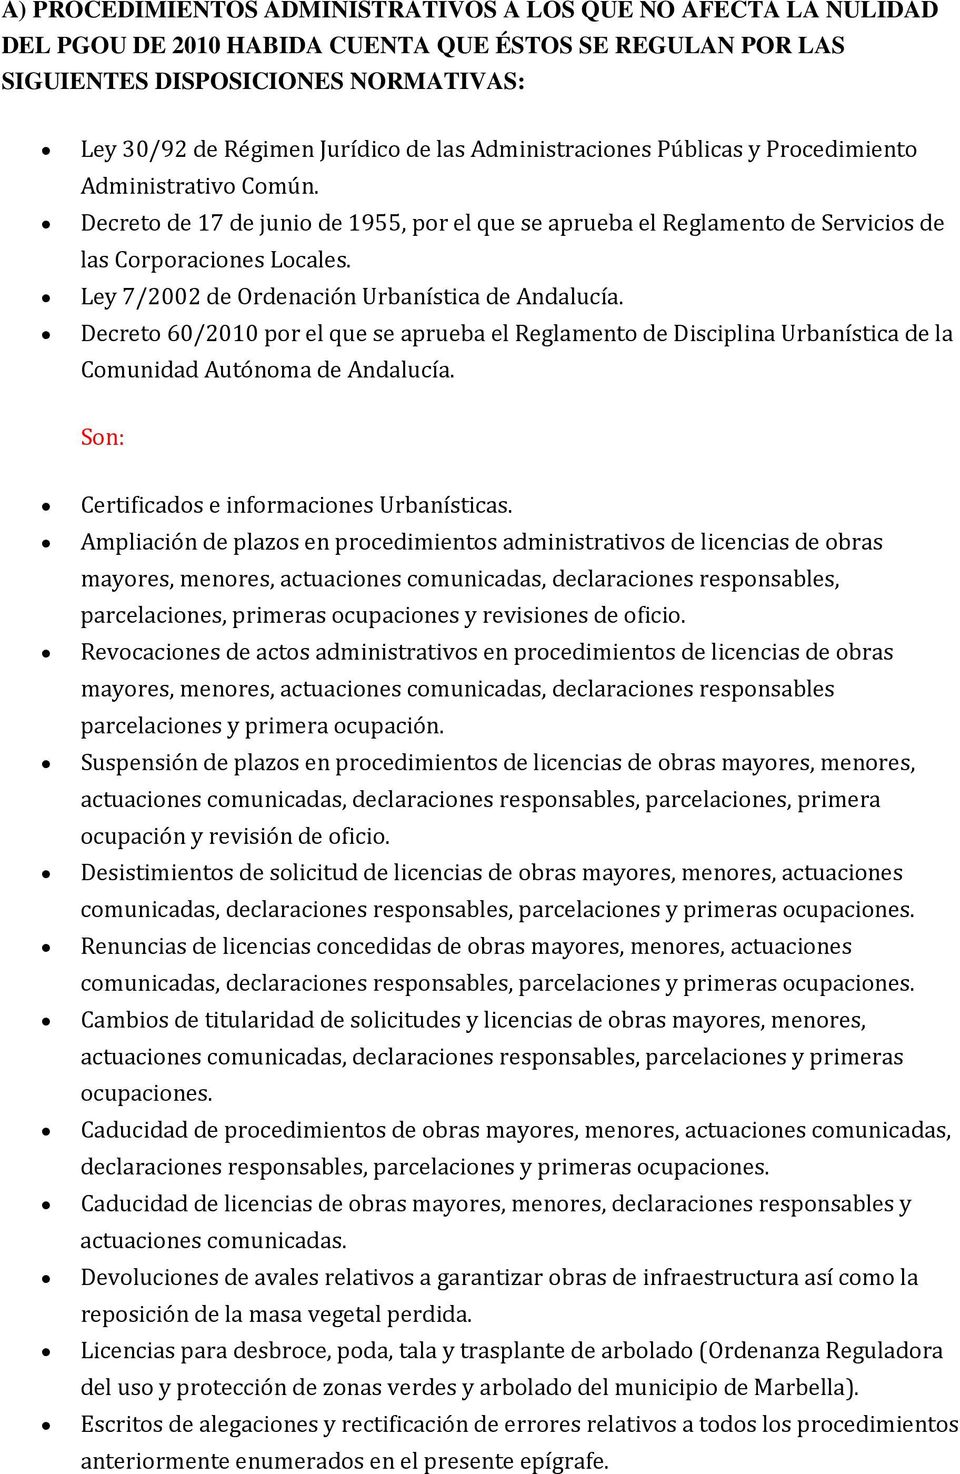 Ley 7/2002 de Ordenación Urbanística de Andalucía. Decreto 60/2010 por el que se aprueba el Reglamento de Disciplina Urbanística de la Comunidad Autónoma de Andalucía.